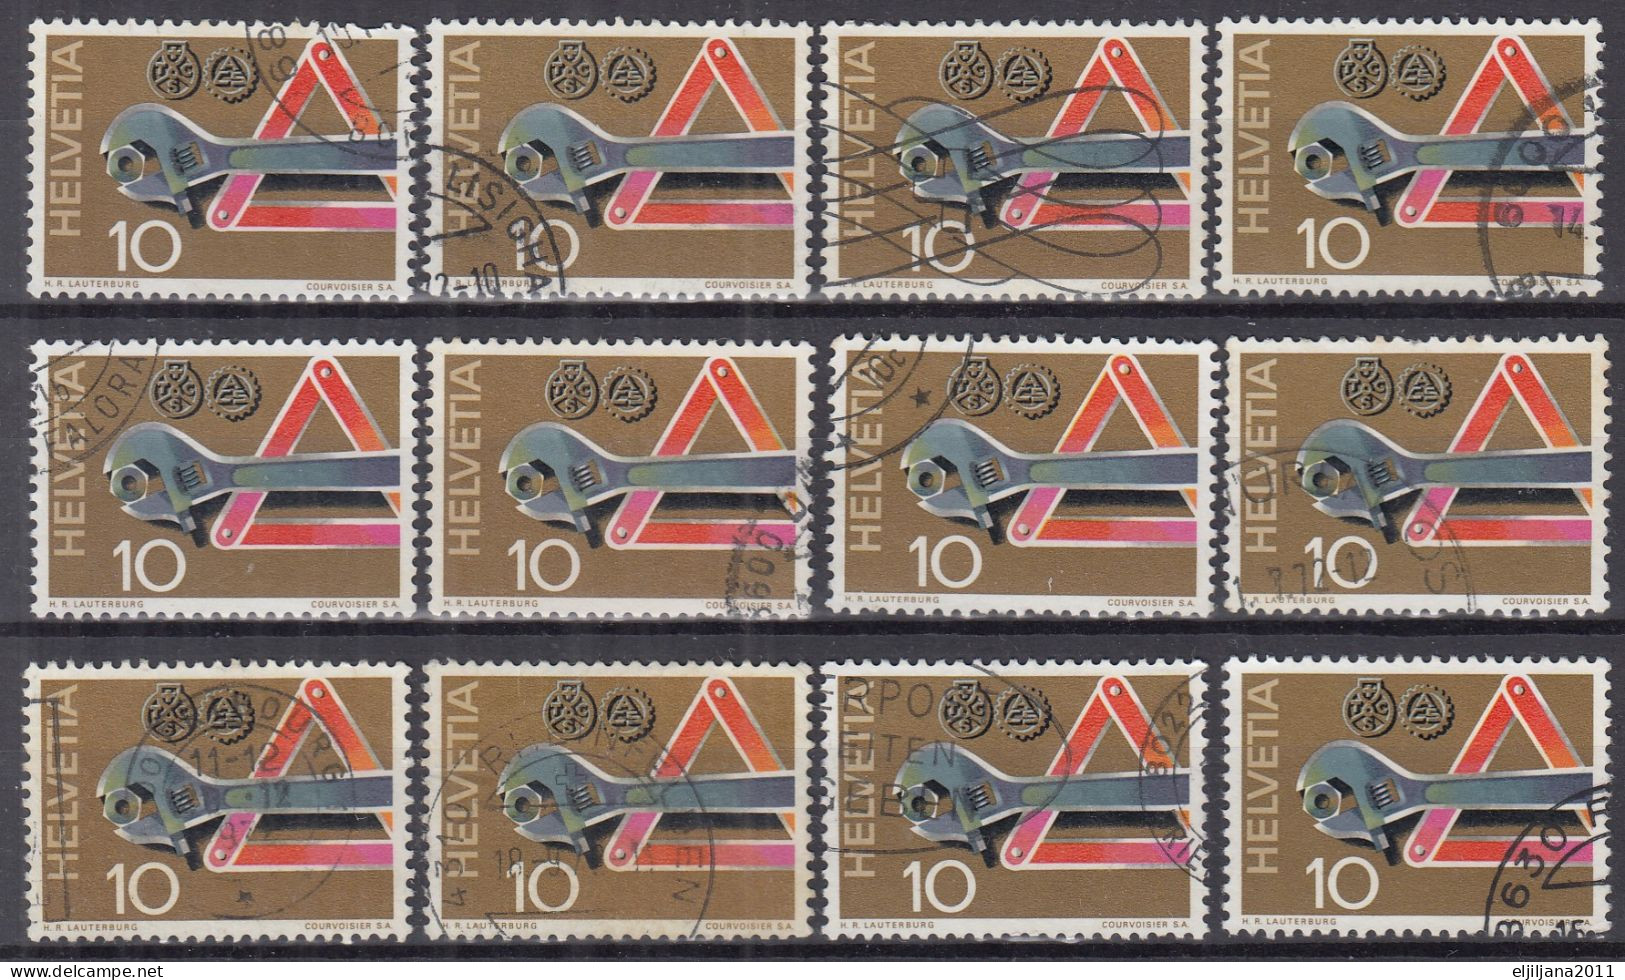 Switzerland / Helvetia / Schweiz / Suisse 1972 ⁕ Pannenhilfe Mi.964 ⁕ 12v Used - Used Stamps